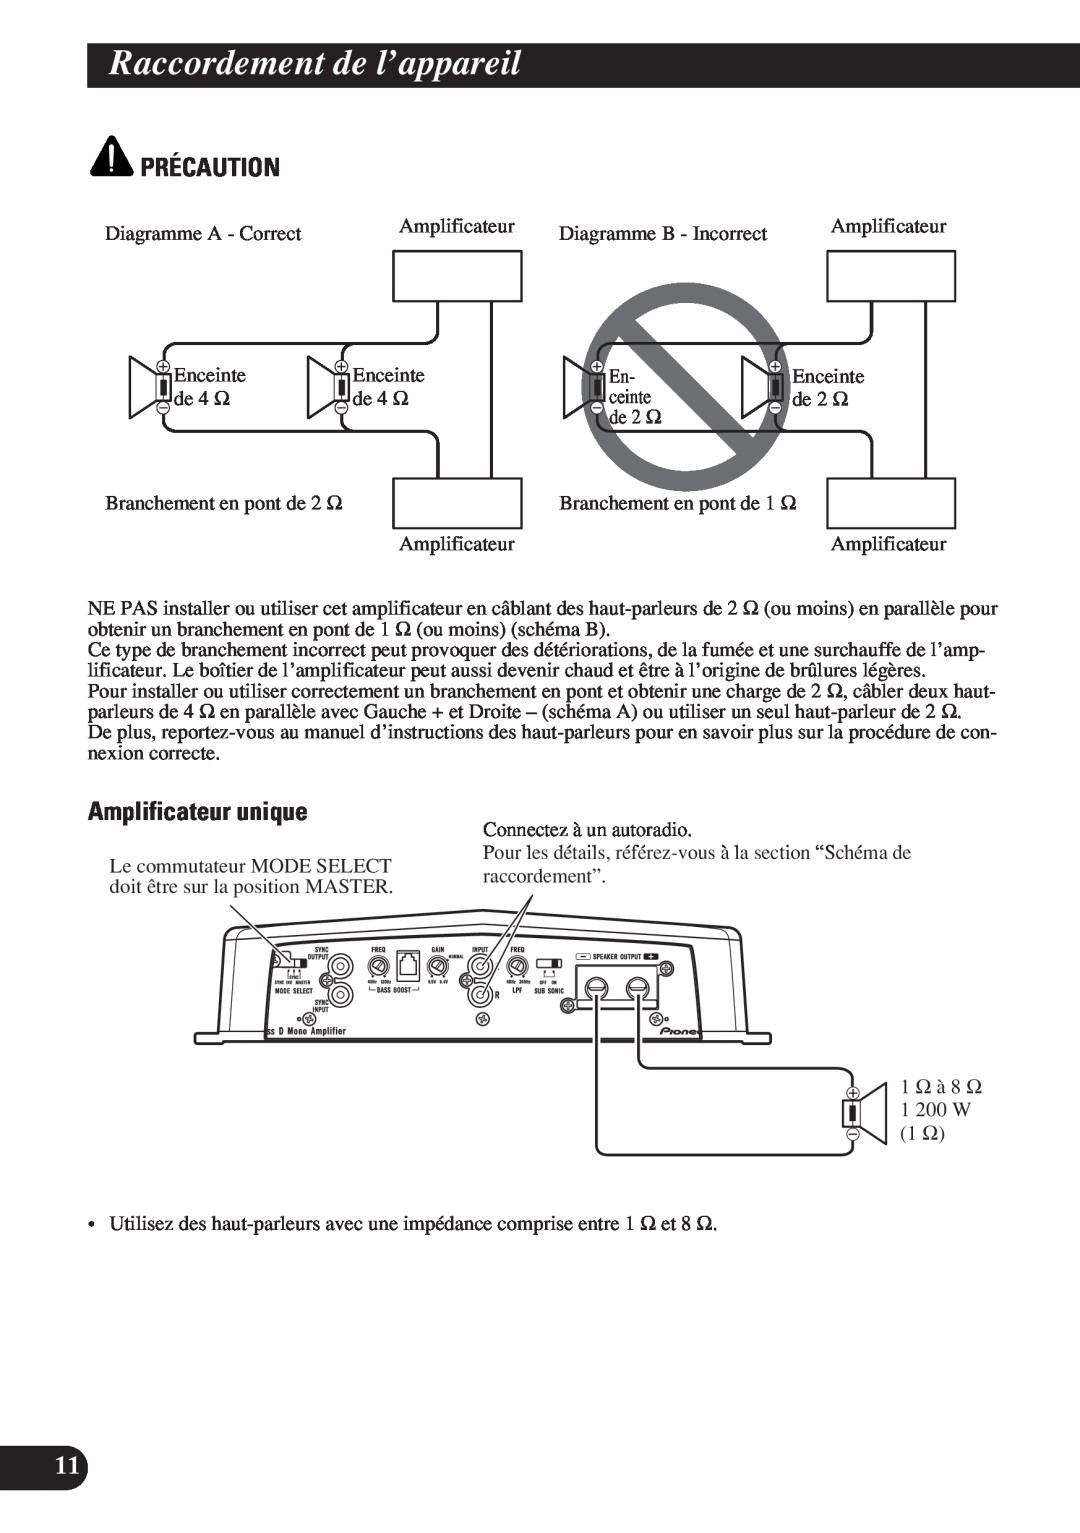 Pioneer D1200SPL owner manual Amplificateur unique, Raccordement de l’appareil, Précaution 